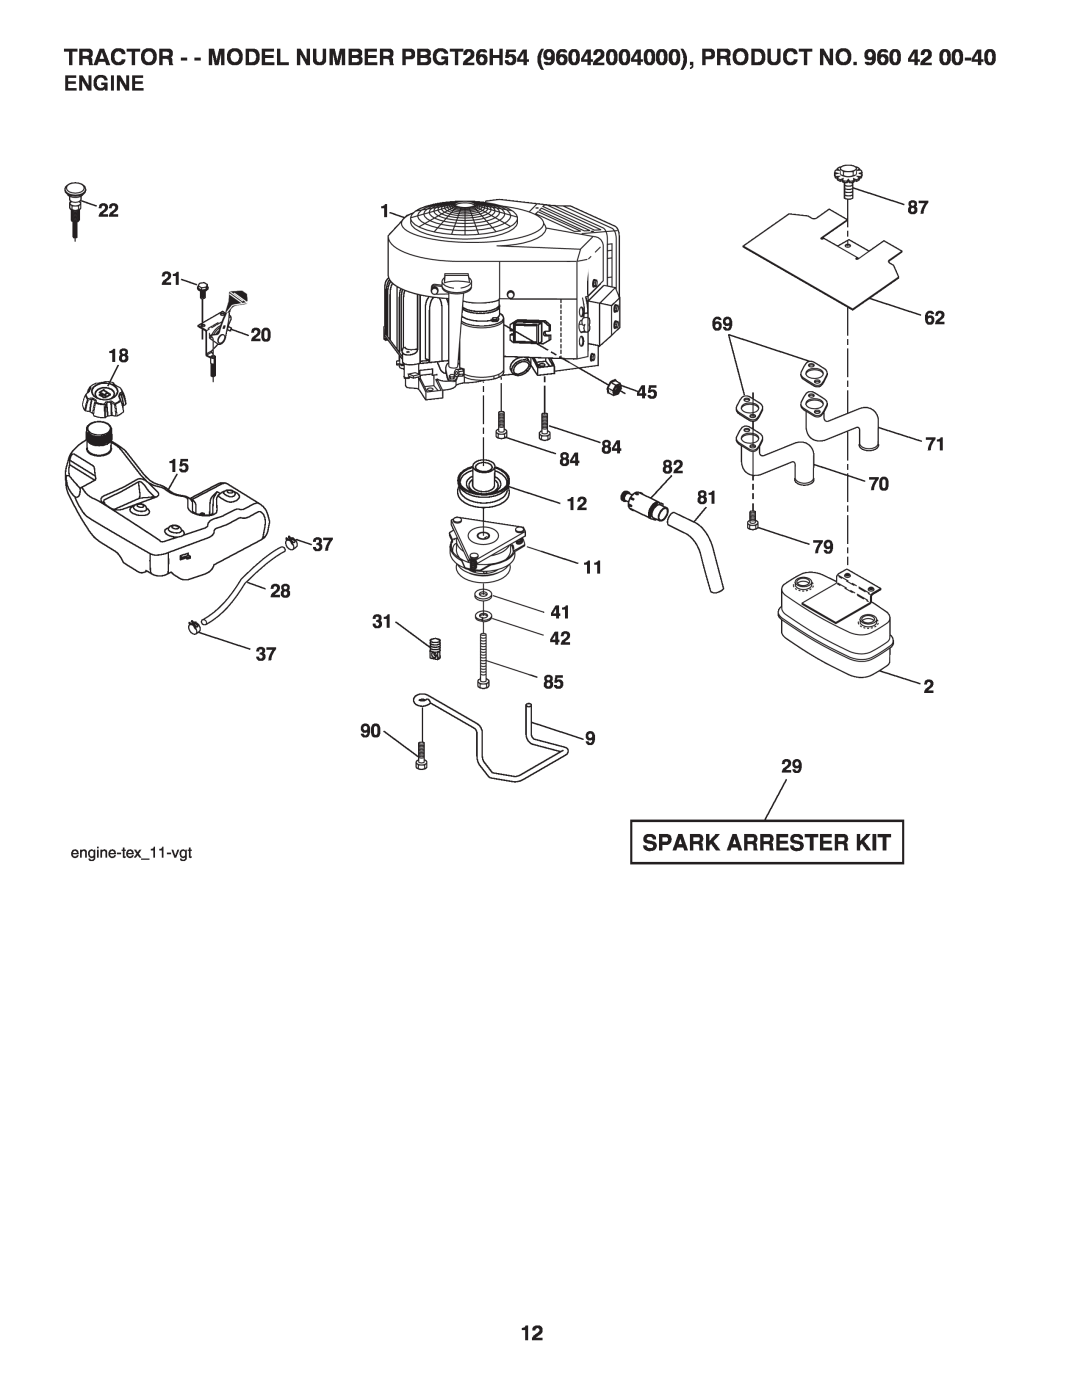 Poulan 409632 manual Spark Arrester Kit, Engine, TRACTOR - - MODEL NUMBER PBGT26H54 96042004000, PRODUCT NO. 960 